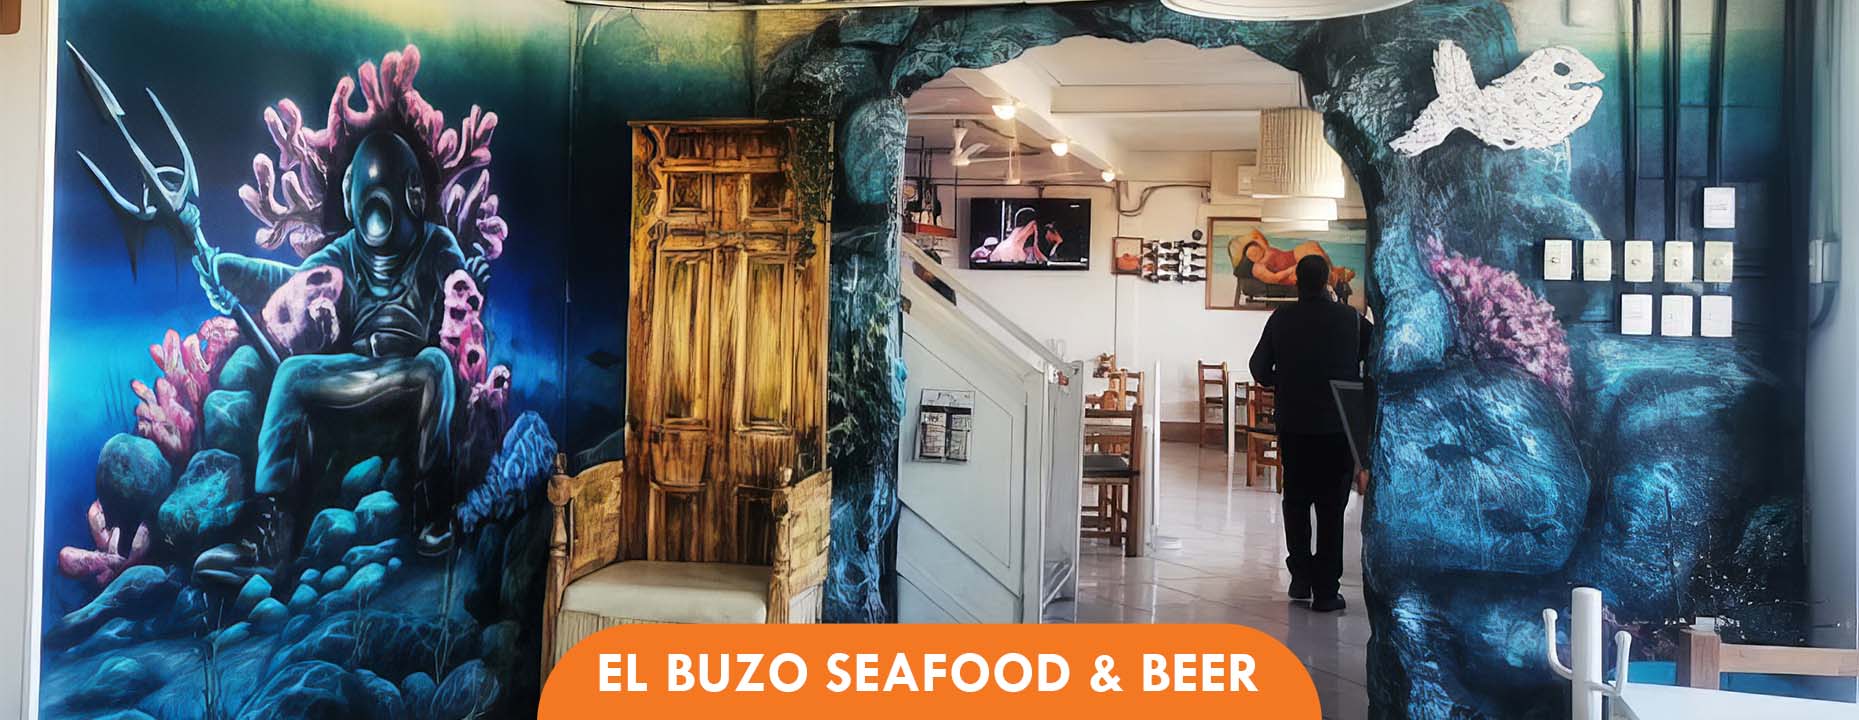 San Valentin Rocky Point, El Buzo Seafood and Beer, Sonoran Spa Puerto Peñasco, Mexico Arizona USA Second